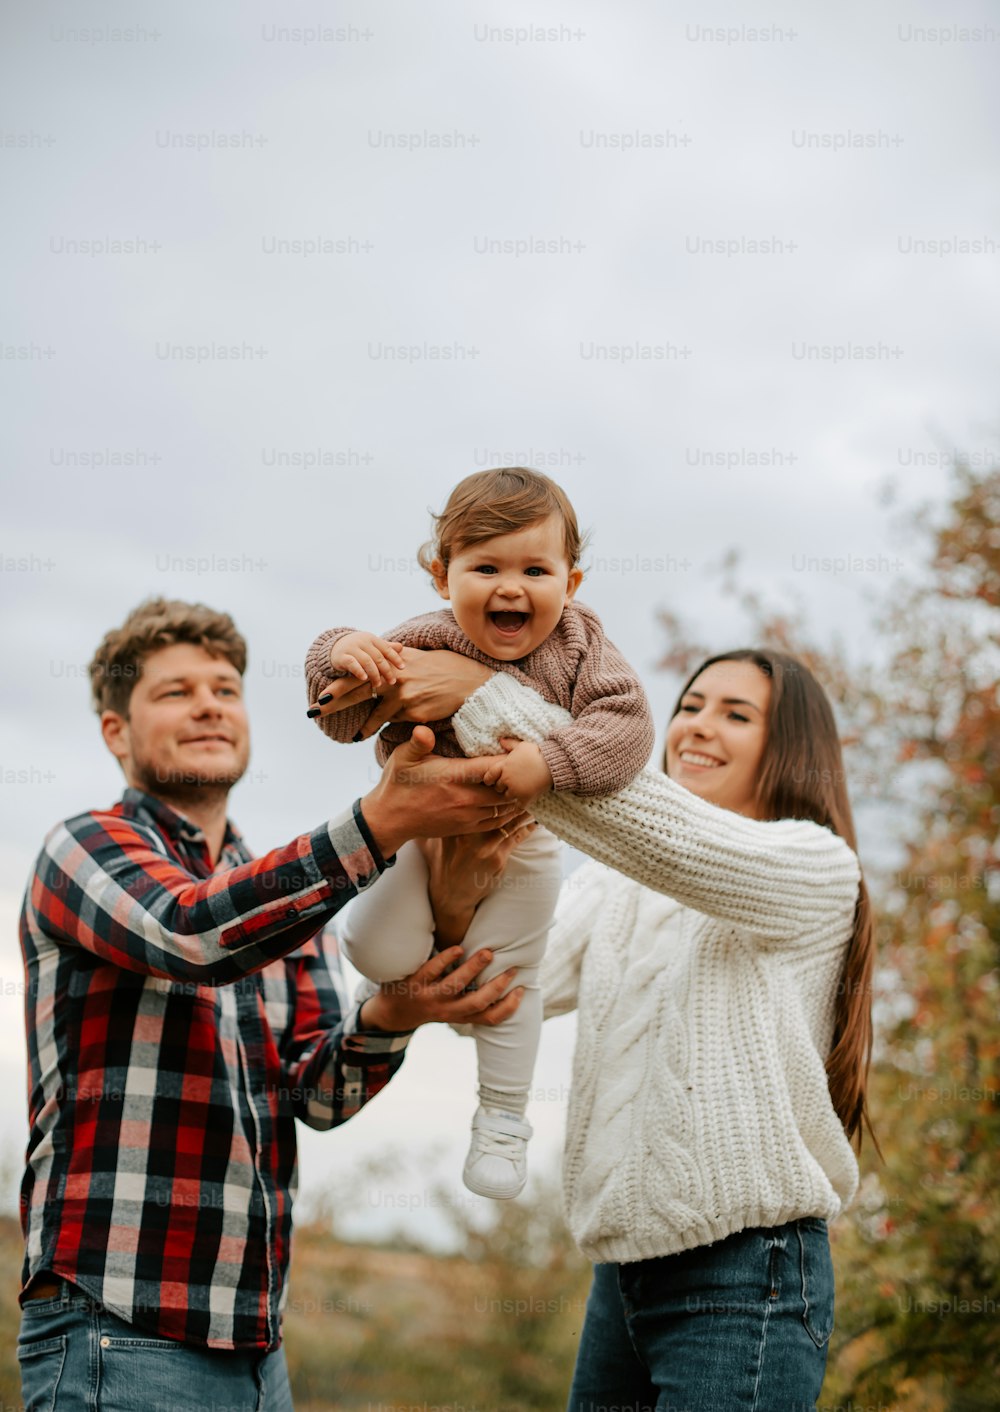 Un hombre y una mujer sosteniendo un bebé en sus manos